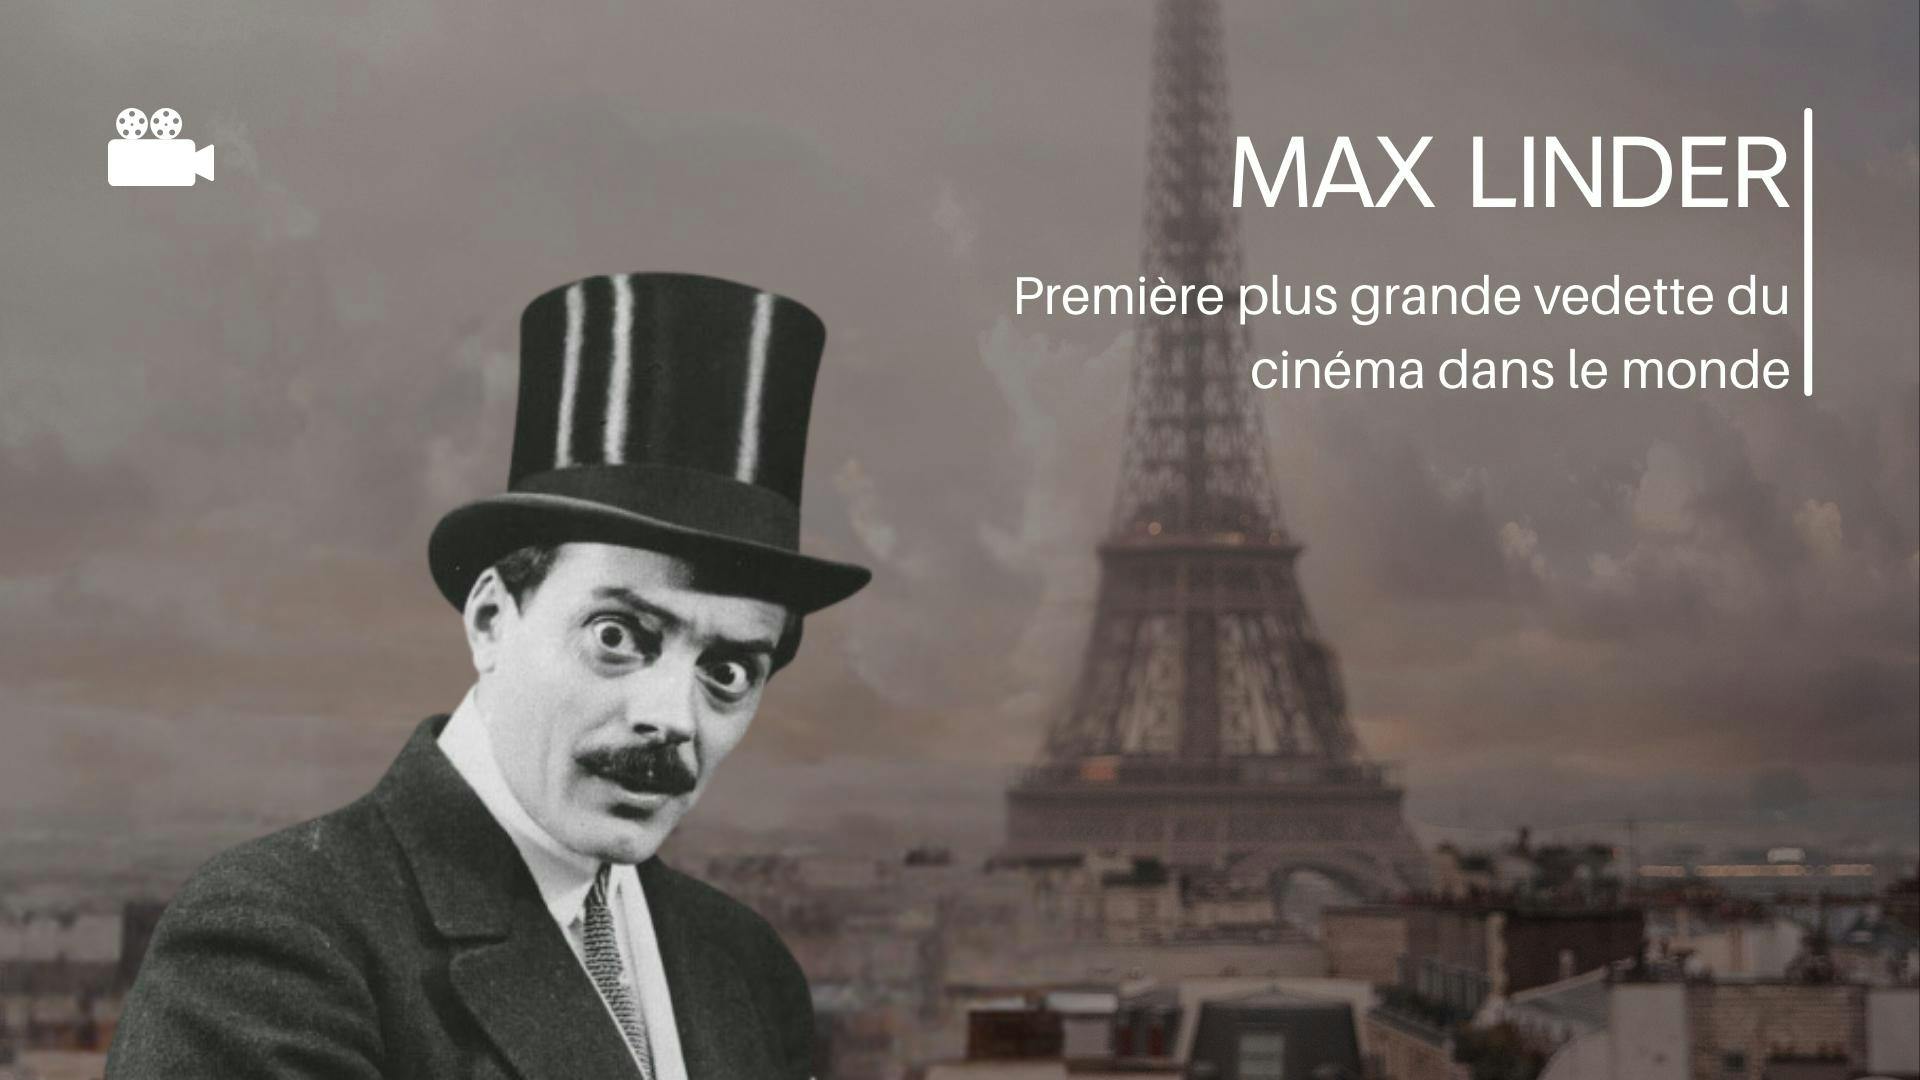 photo de Max Linder, première plus grande vedette de cinéma dans le monde avec un texte à droite